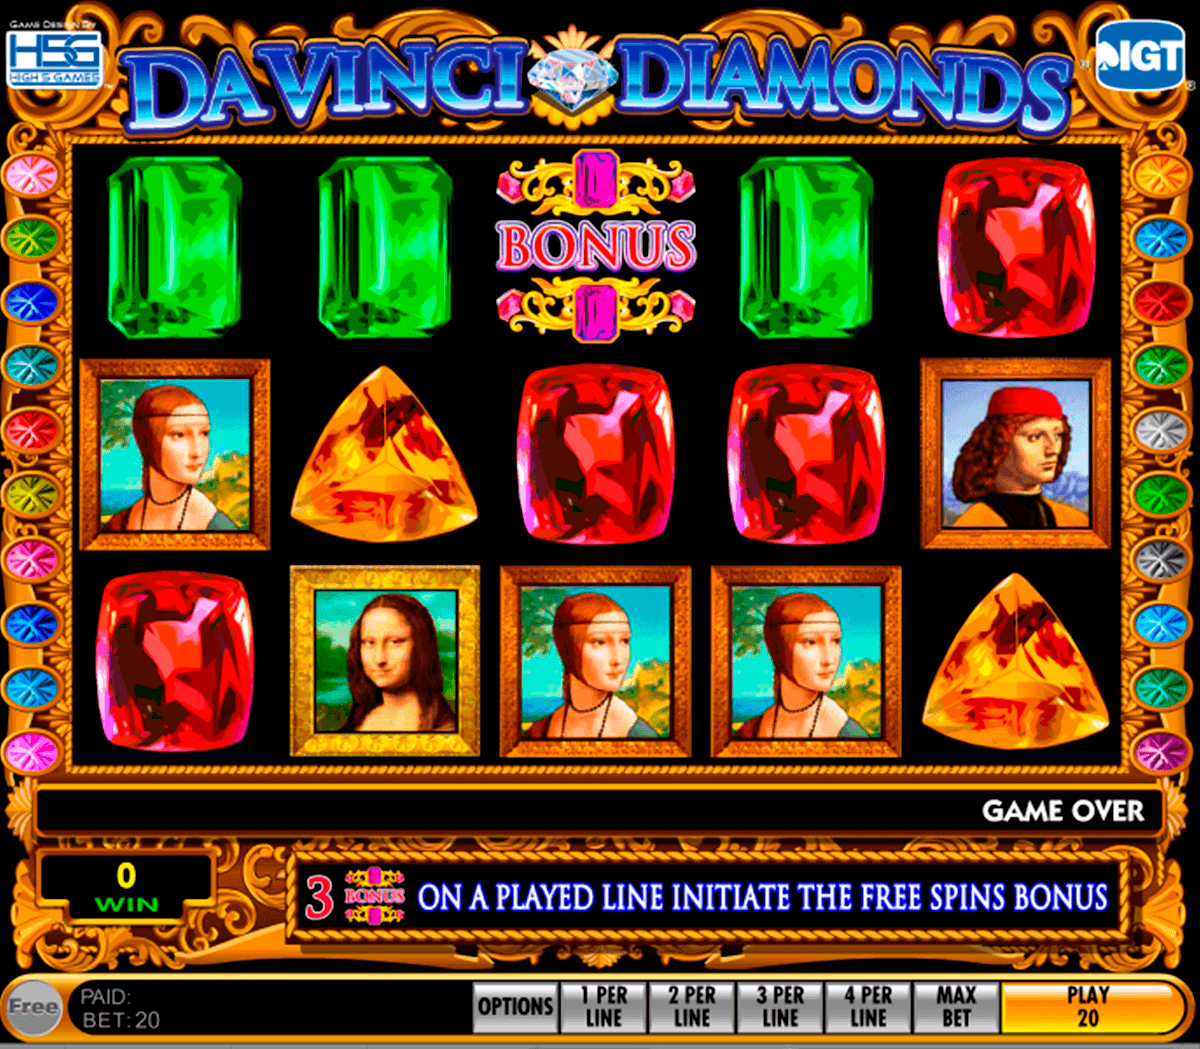 Davinci Diamonds Slots